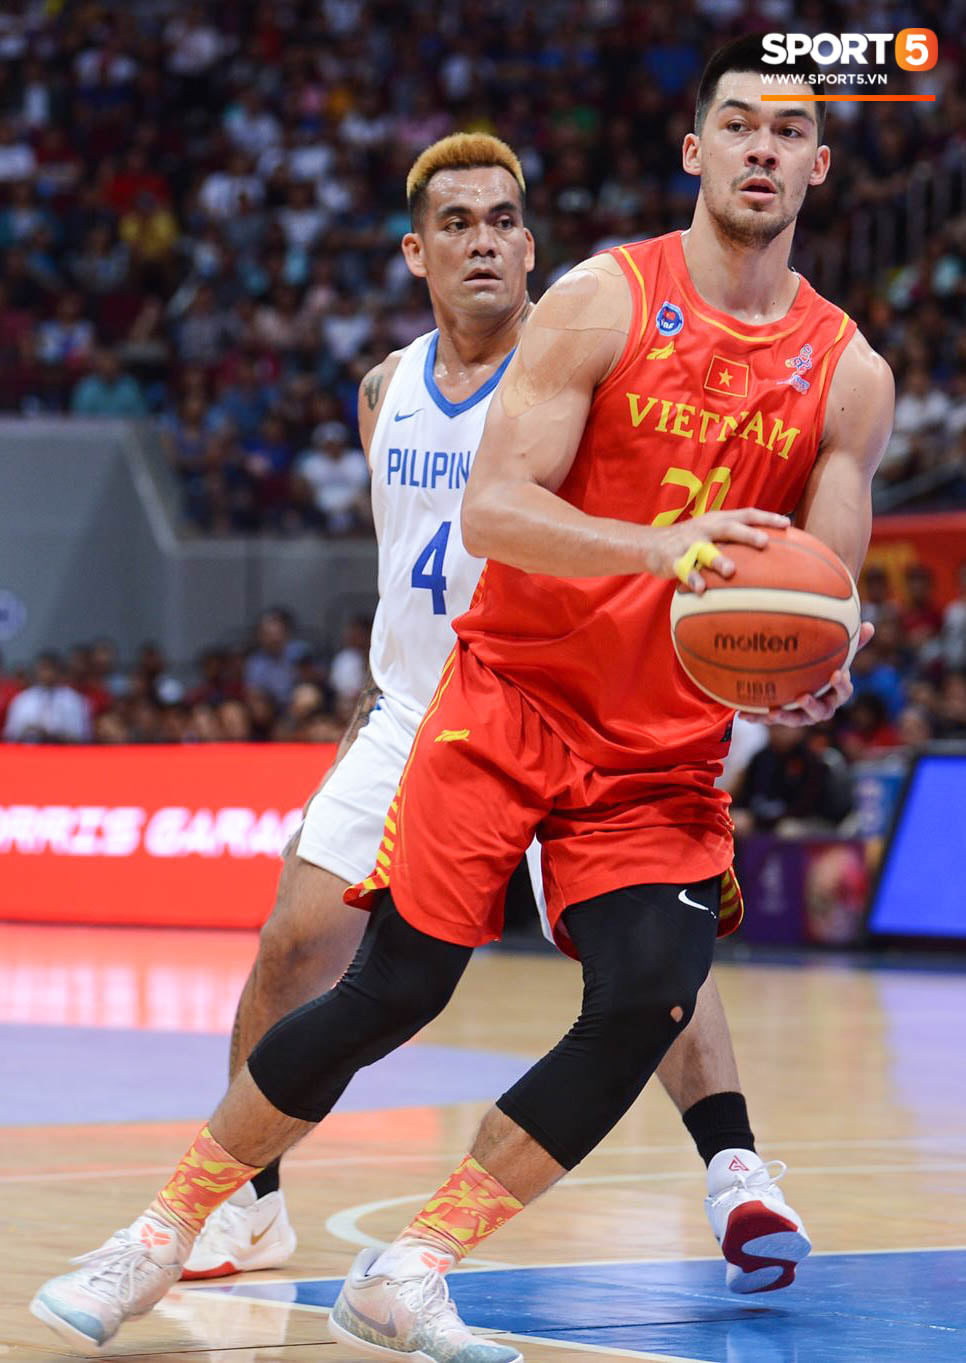 Bất lợi quá lớn về mặt thể hình, đội tuyển bóng rổ Việt Nam nhận thất bại với tỉ số đậm trước chủ nhà Philippines - Ảnh 10.